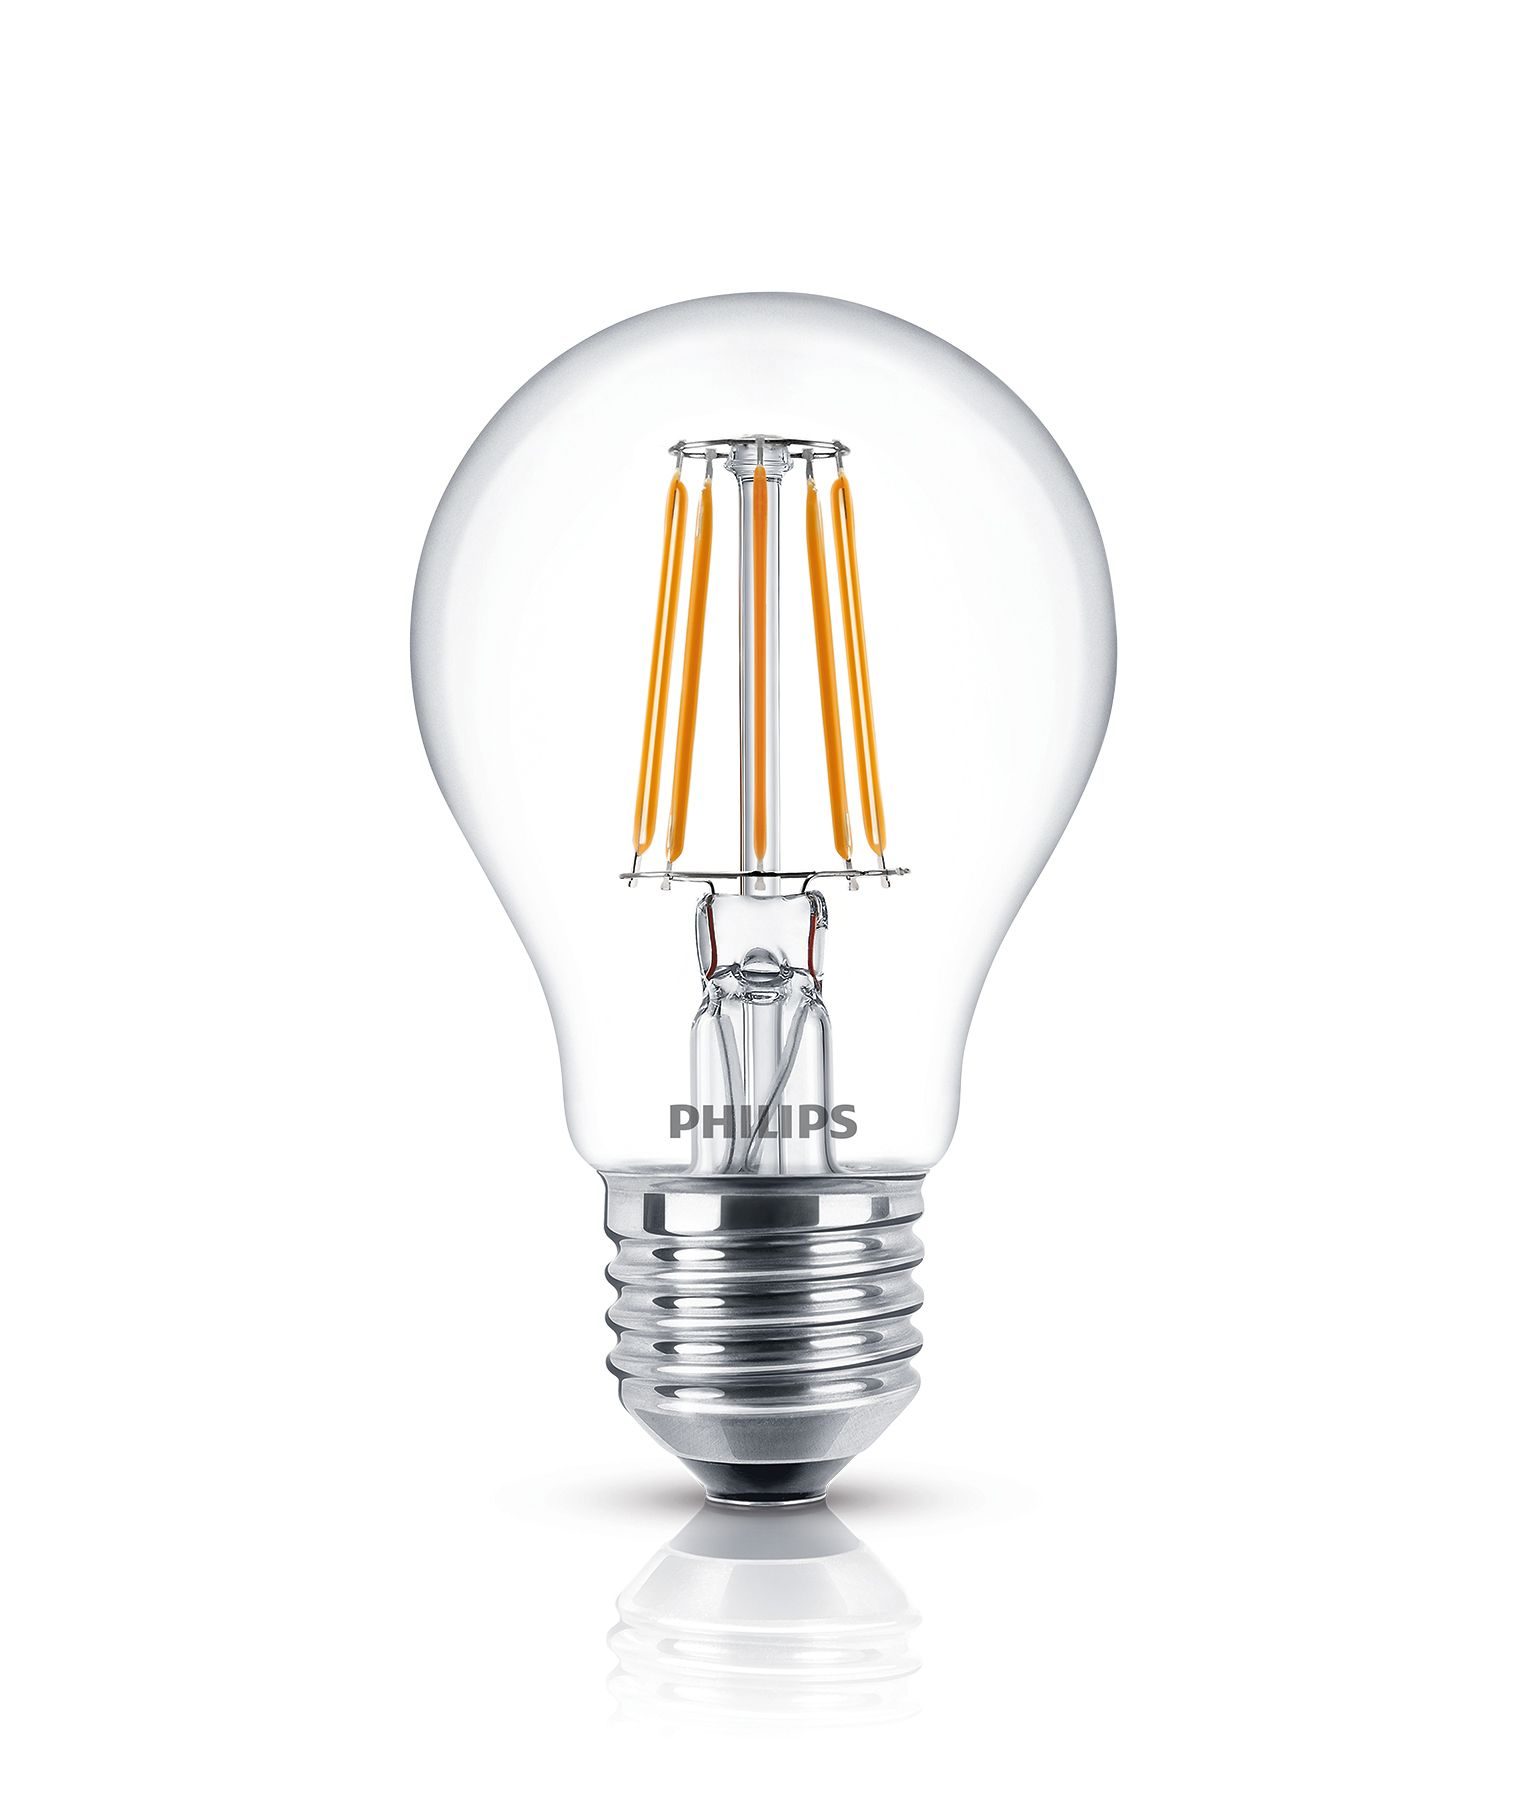 Classic filament | LEDFILAM Philips lighting